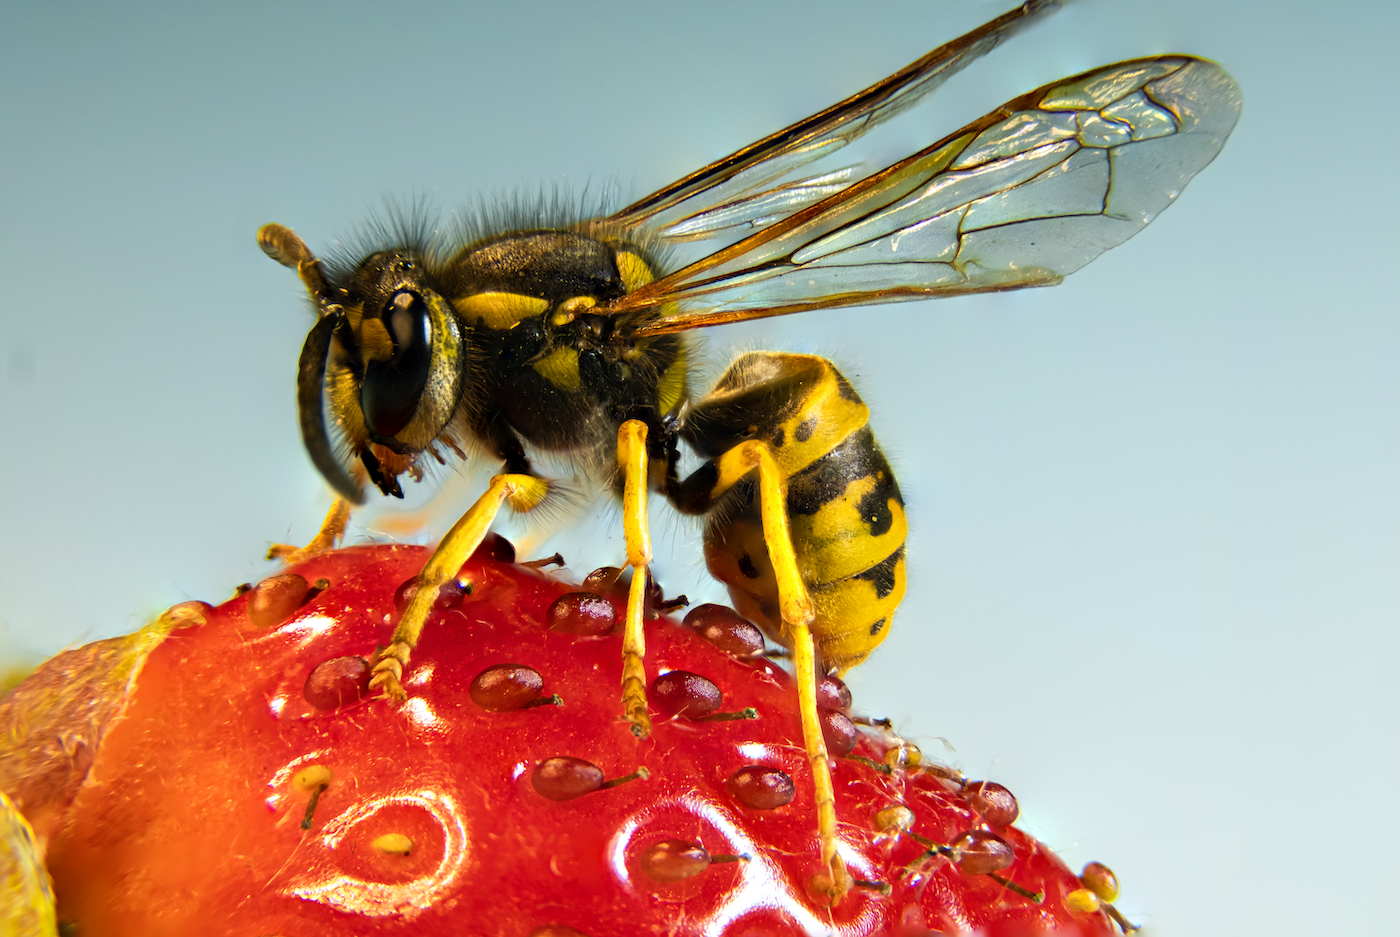 Fig wasp, Life Cycle, Pollination & Adaptations